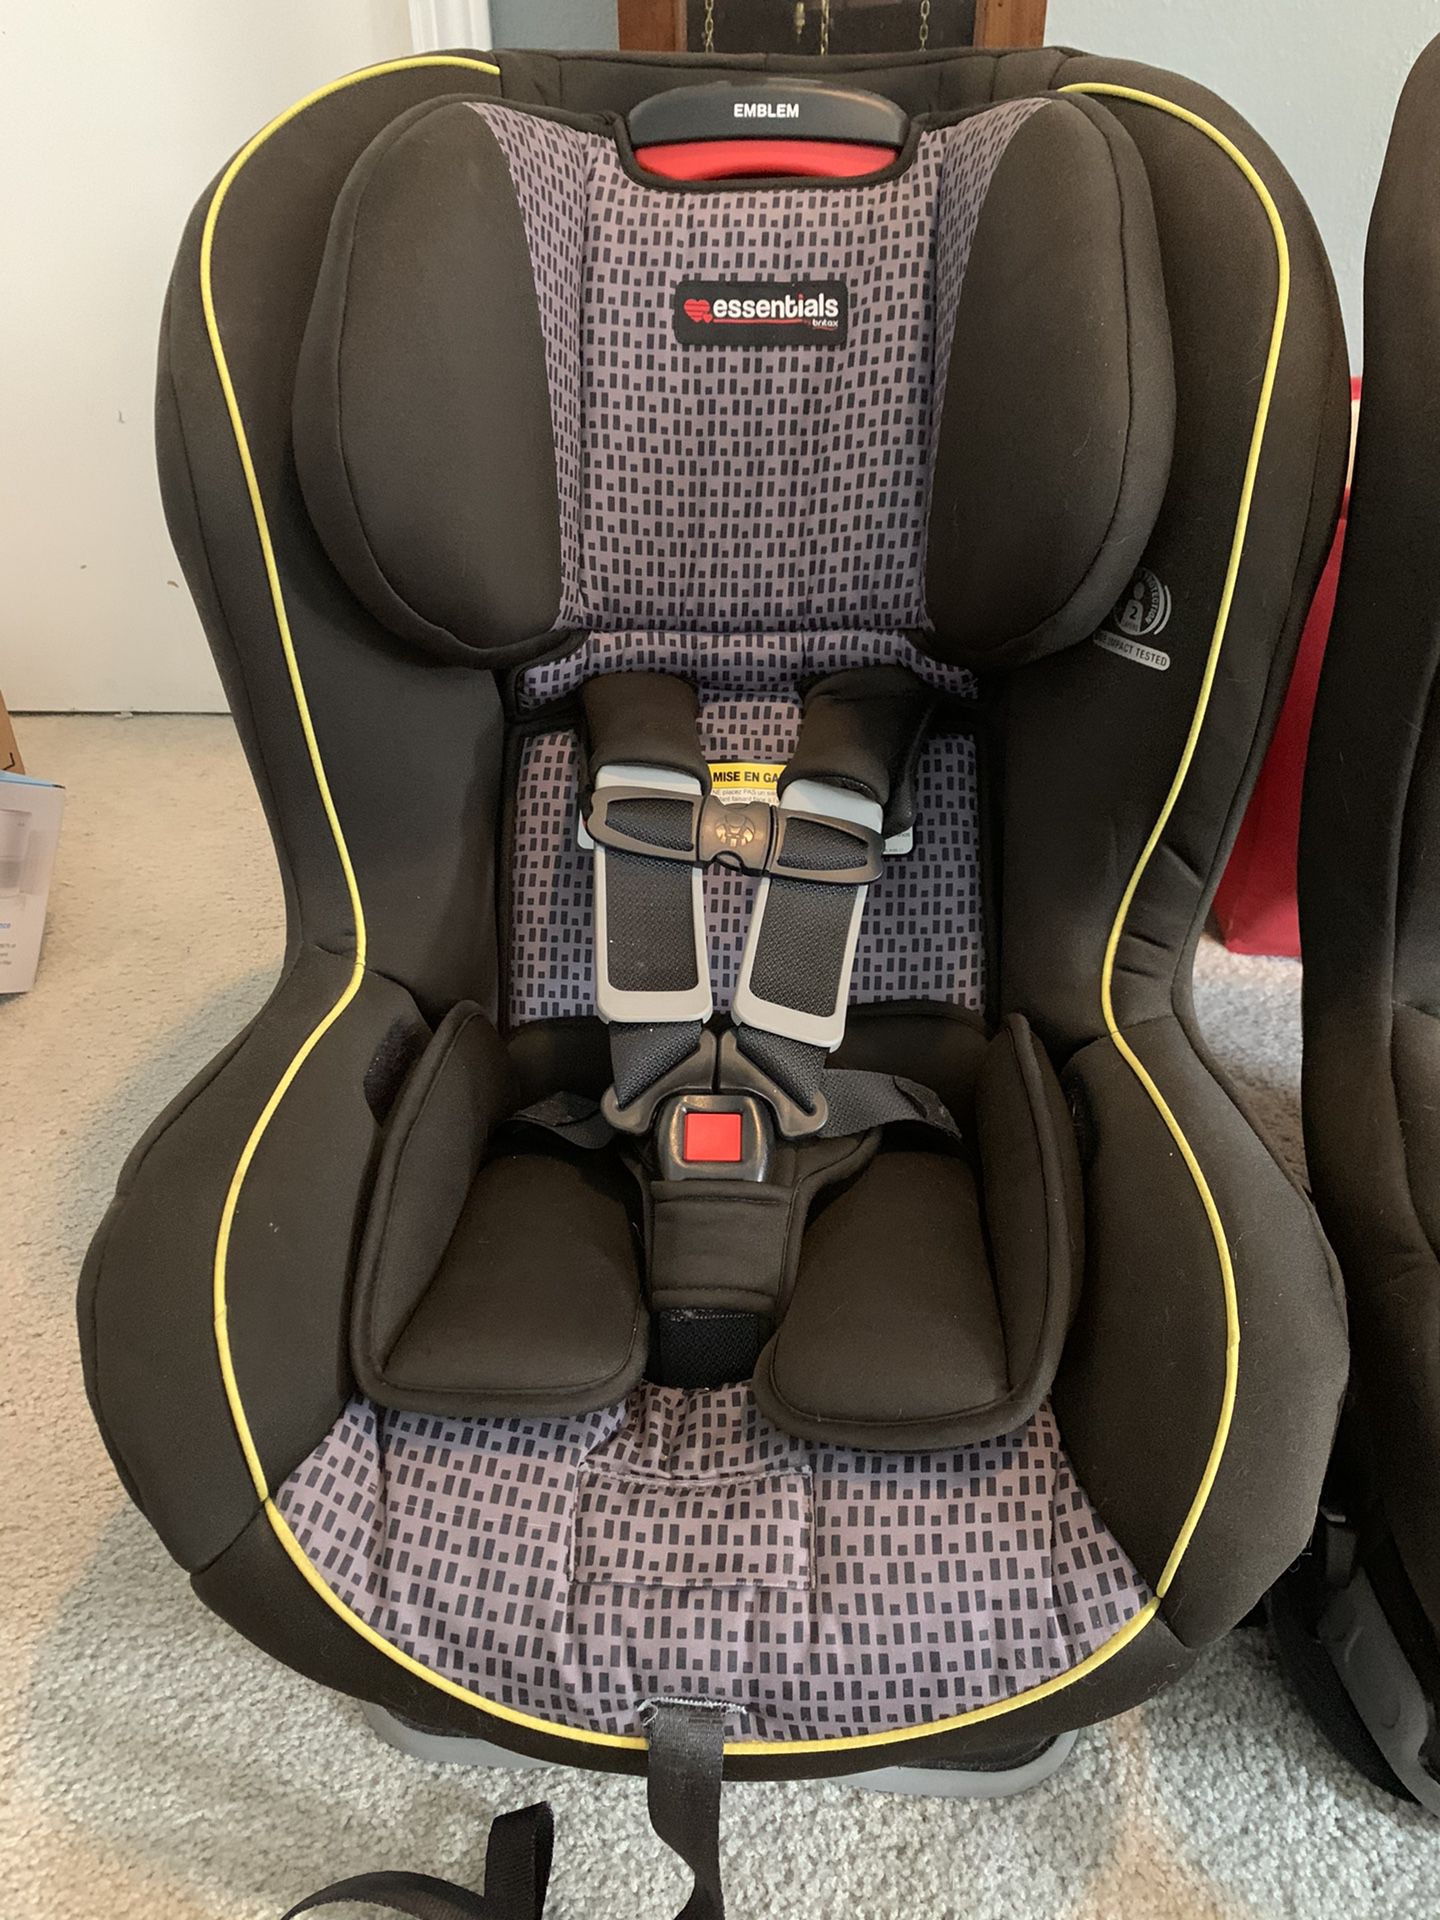 Britax Emblem car seats